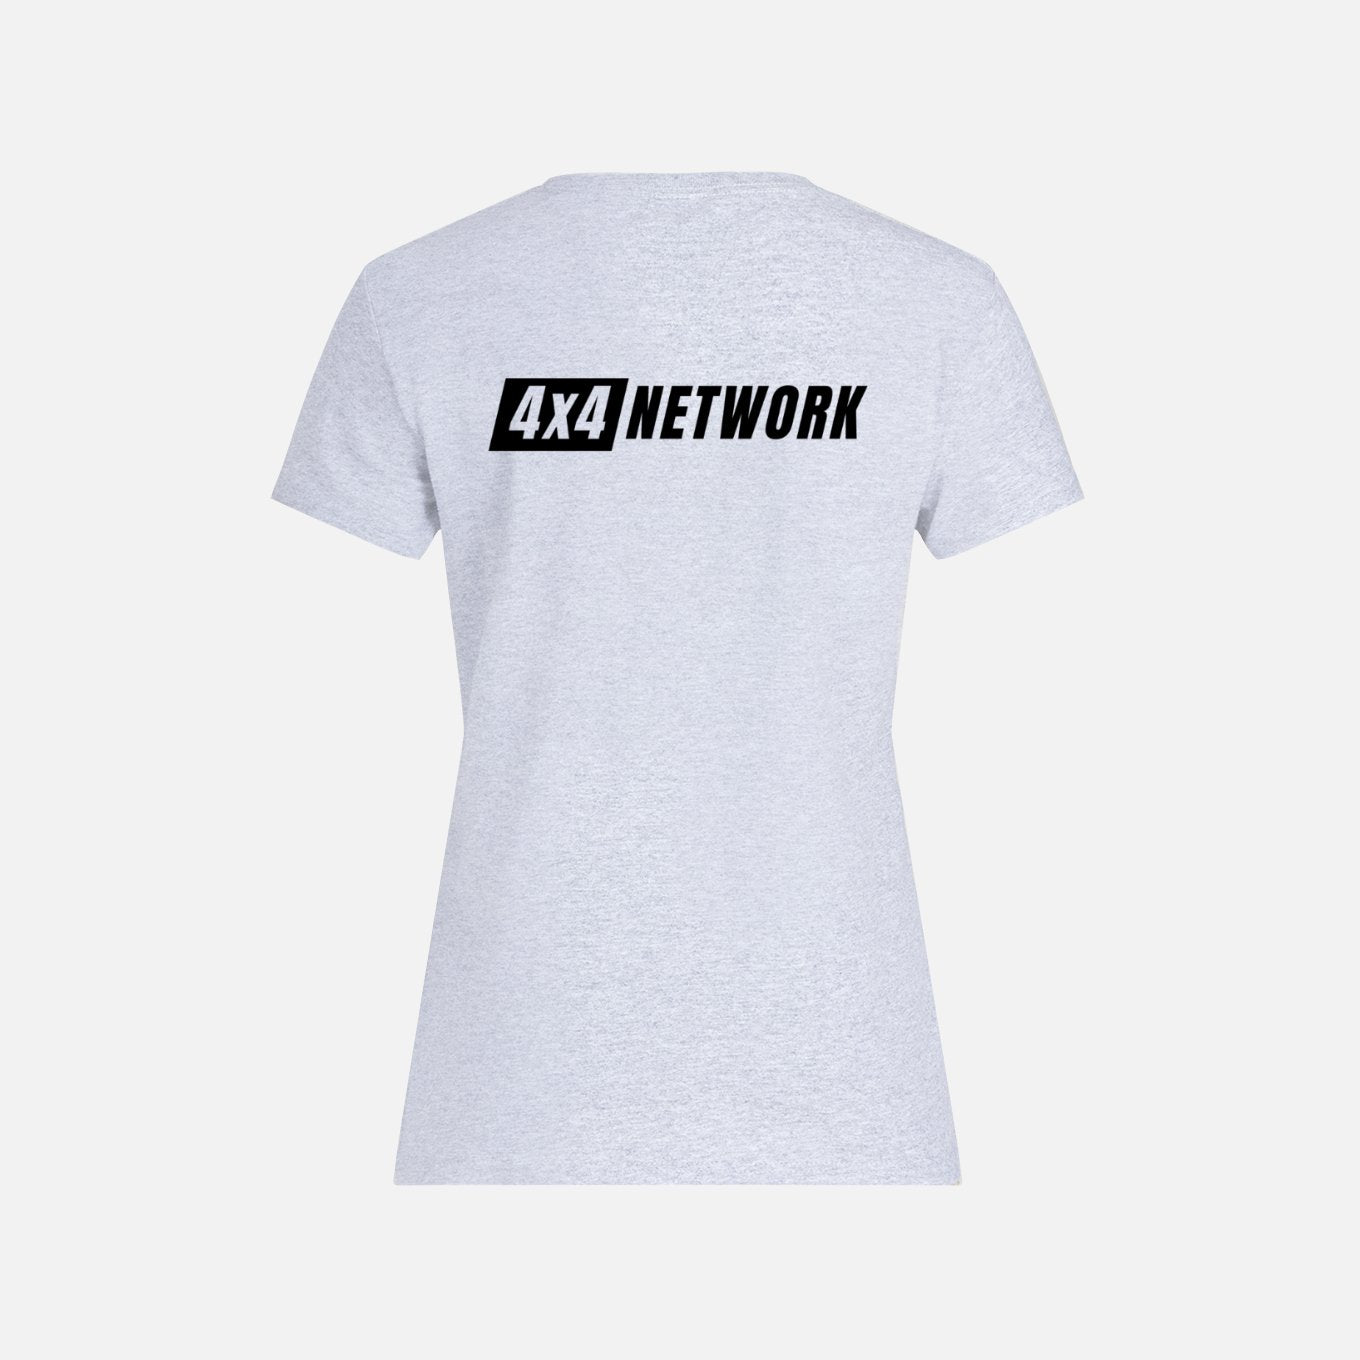 Women’s 4X4 Network Tee-Shirt